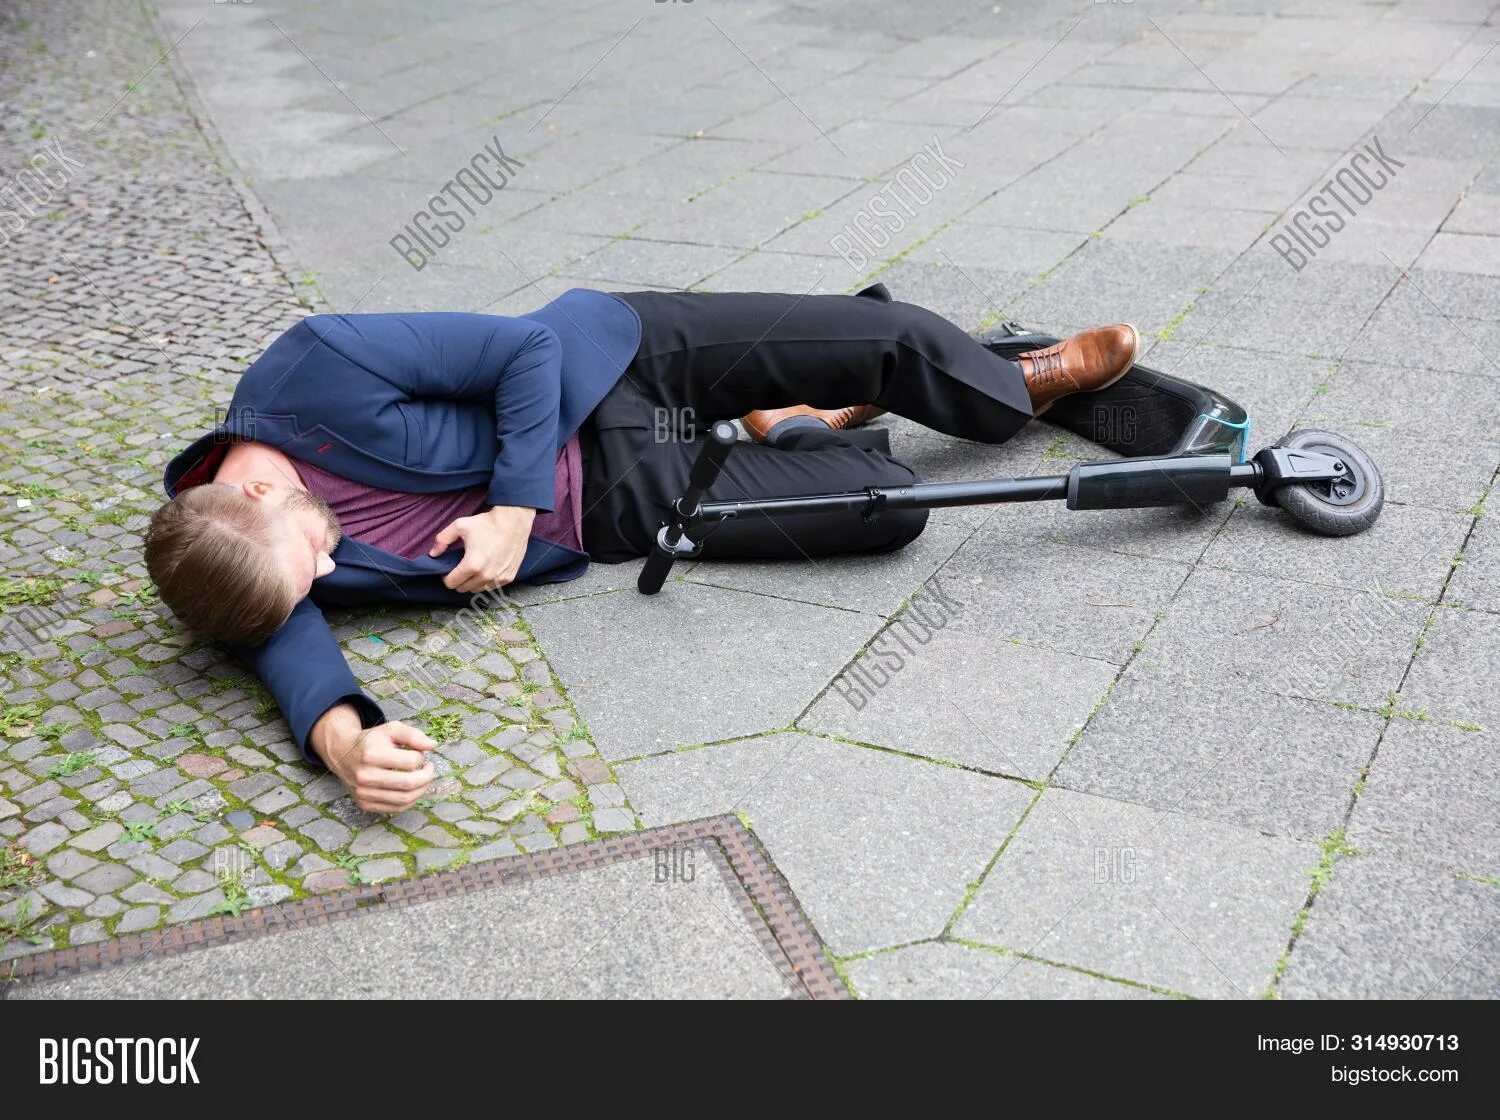 Человек лежит без сознания. Парень лежит без сознания. Несчастный случай на улице. Фото несчастного человека. Муж без сознания